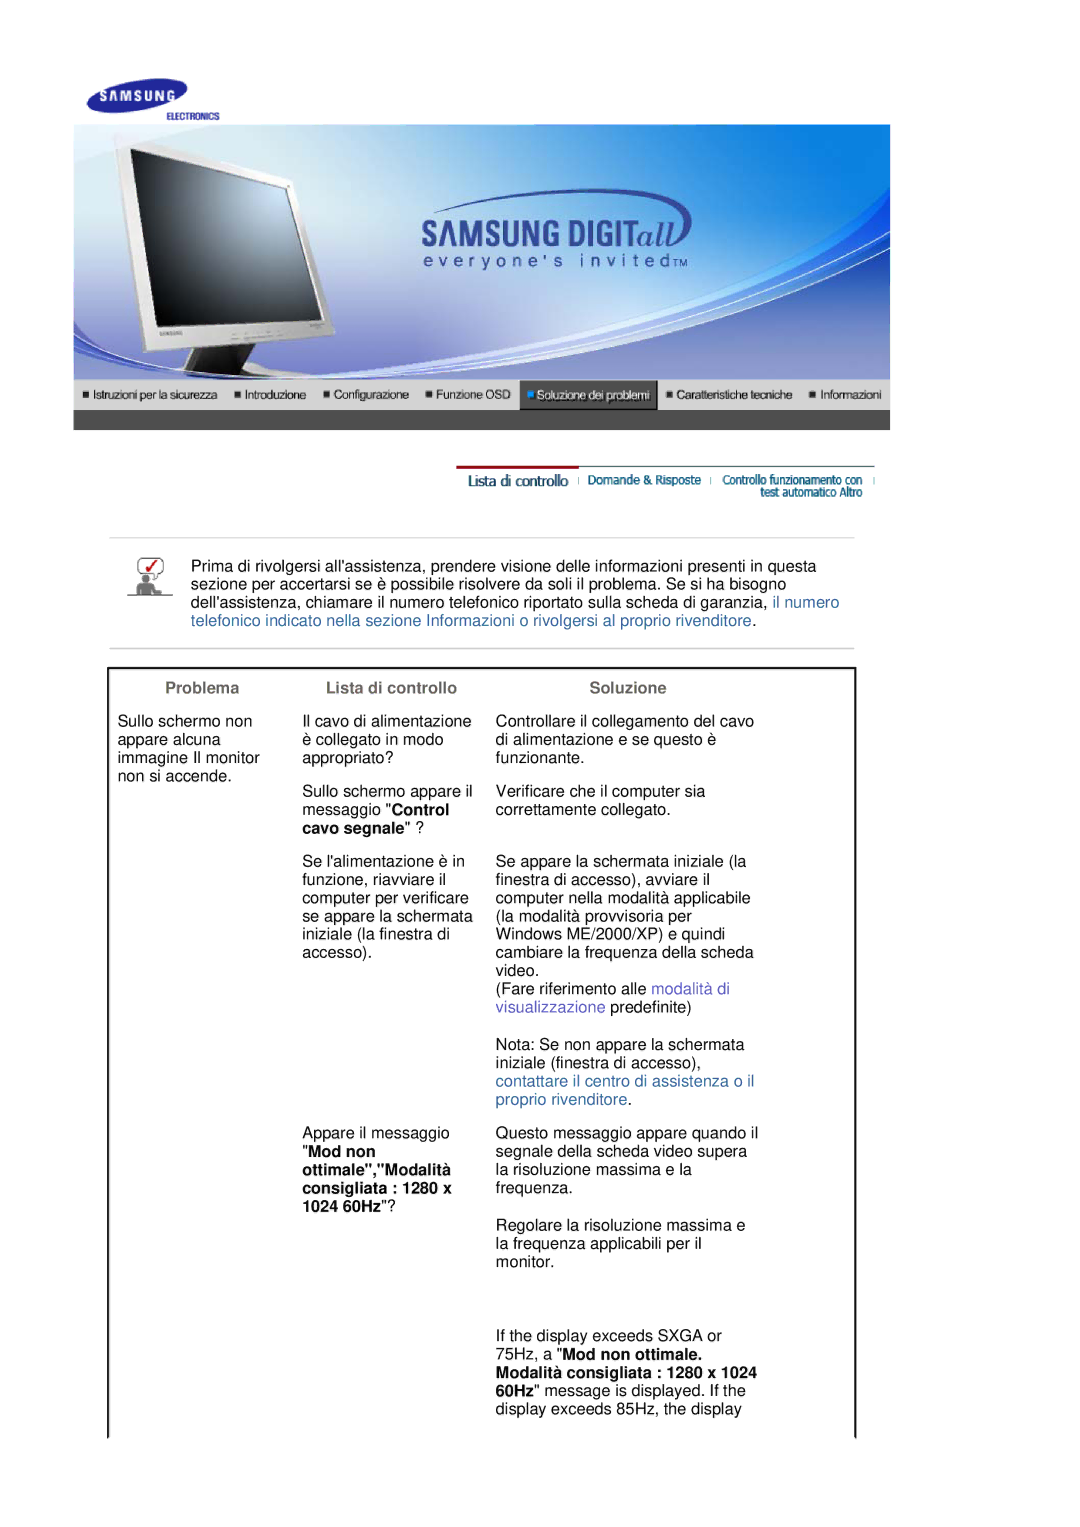 Samsung MJ17CSKS/EDC manual Problema Lista di controllo, Cavo segnale ?, Soluzione 